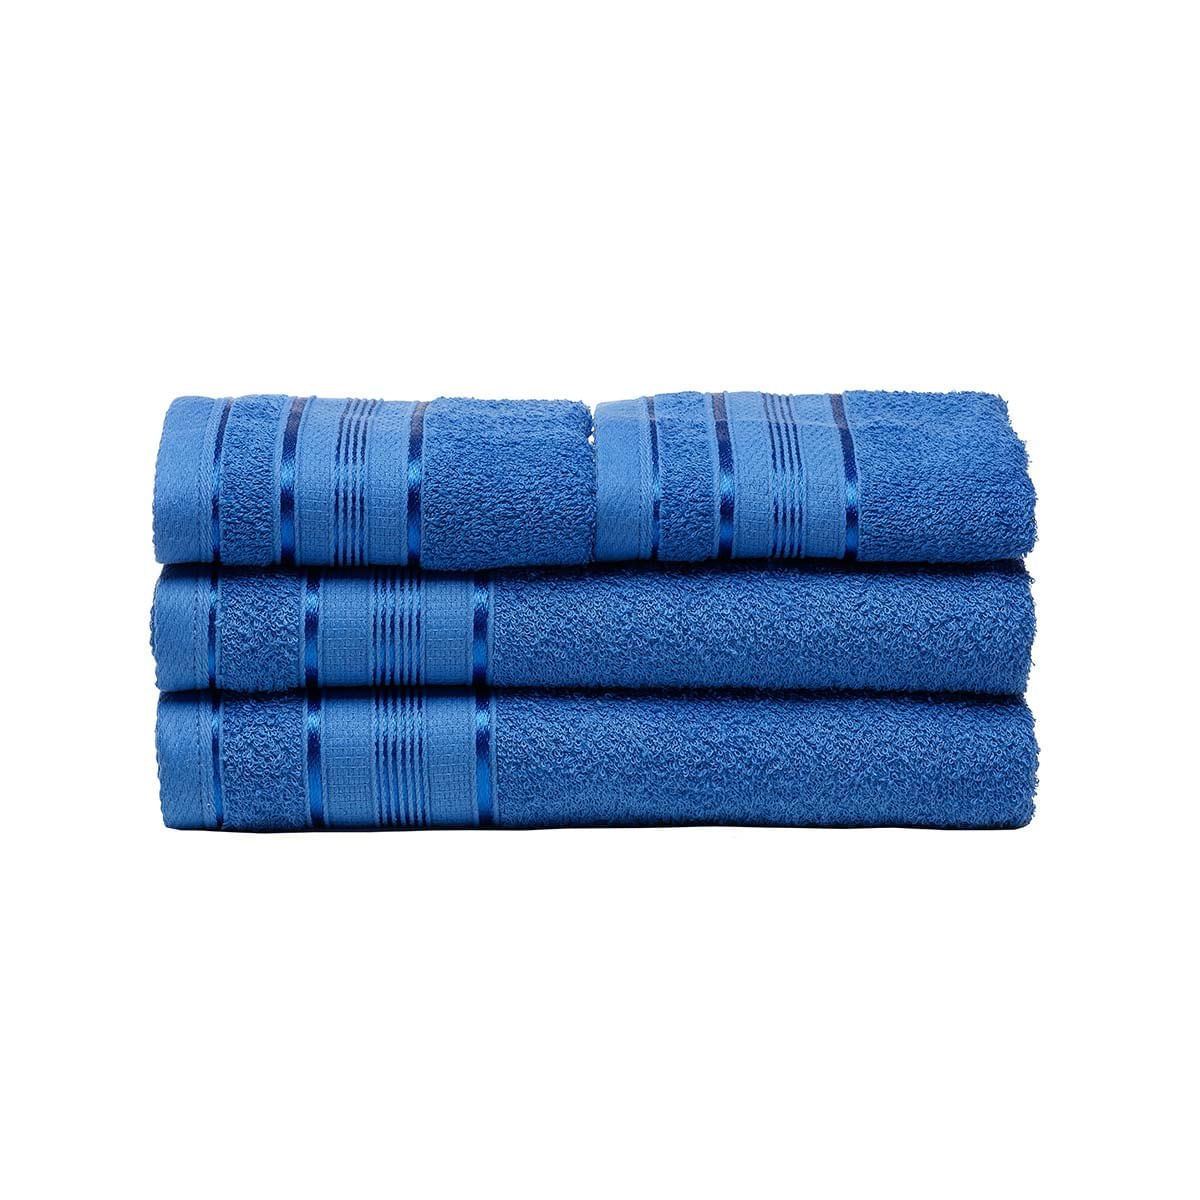 jogo-de-toalhas-santista-banho-e-rosto-royal-royantj4jknu6338-100--algodao-fio-penteado-4-pecas-azul-1.jpg